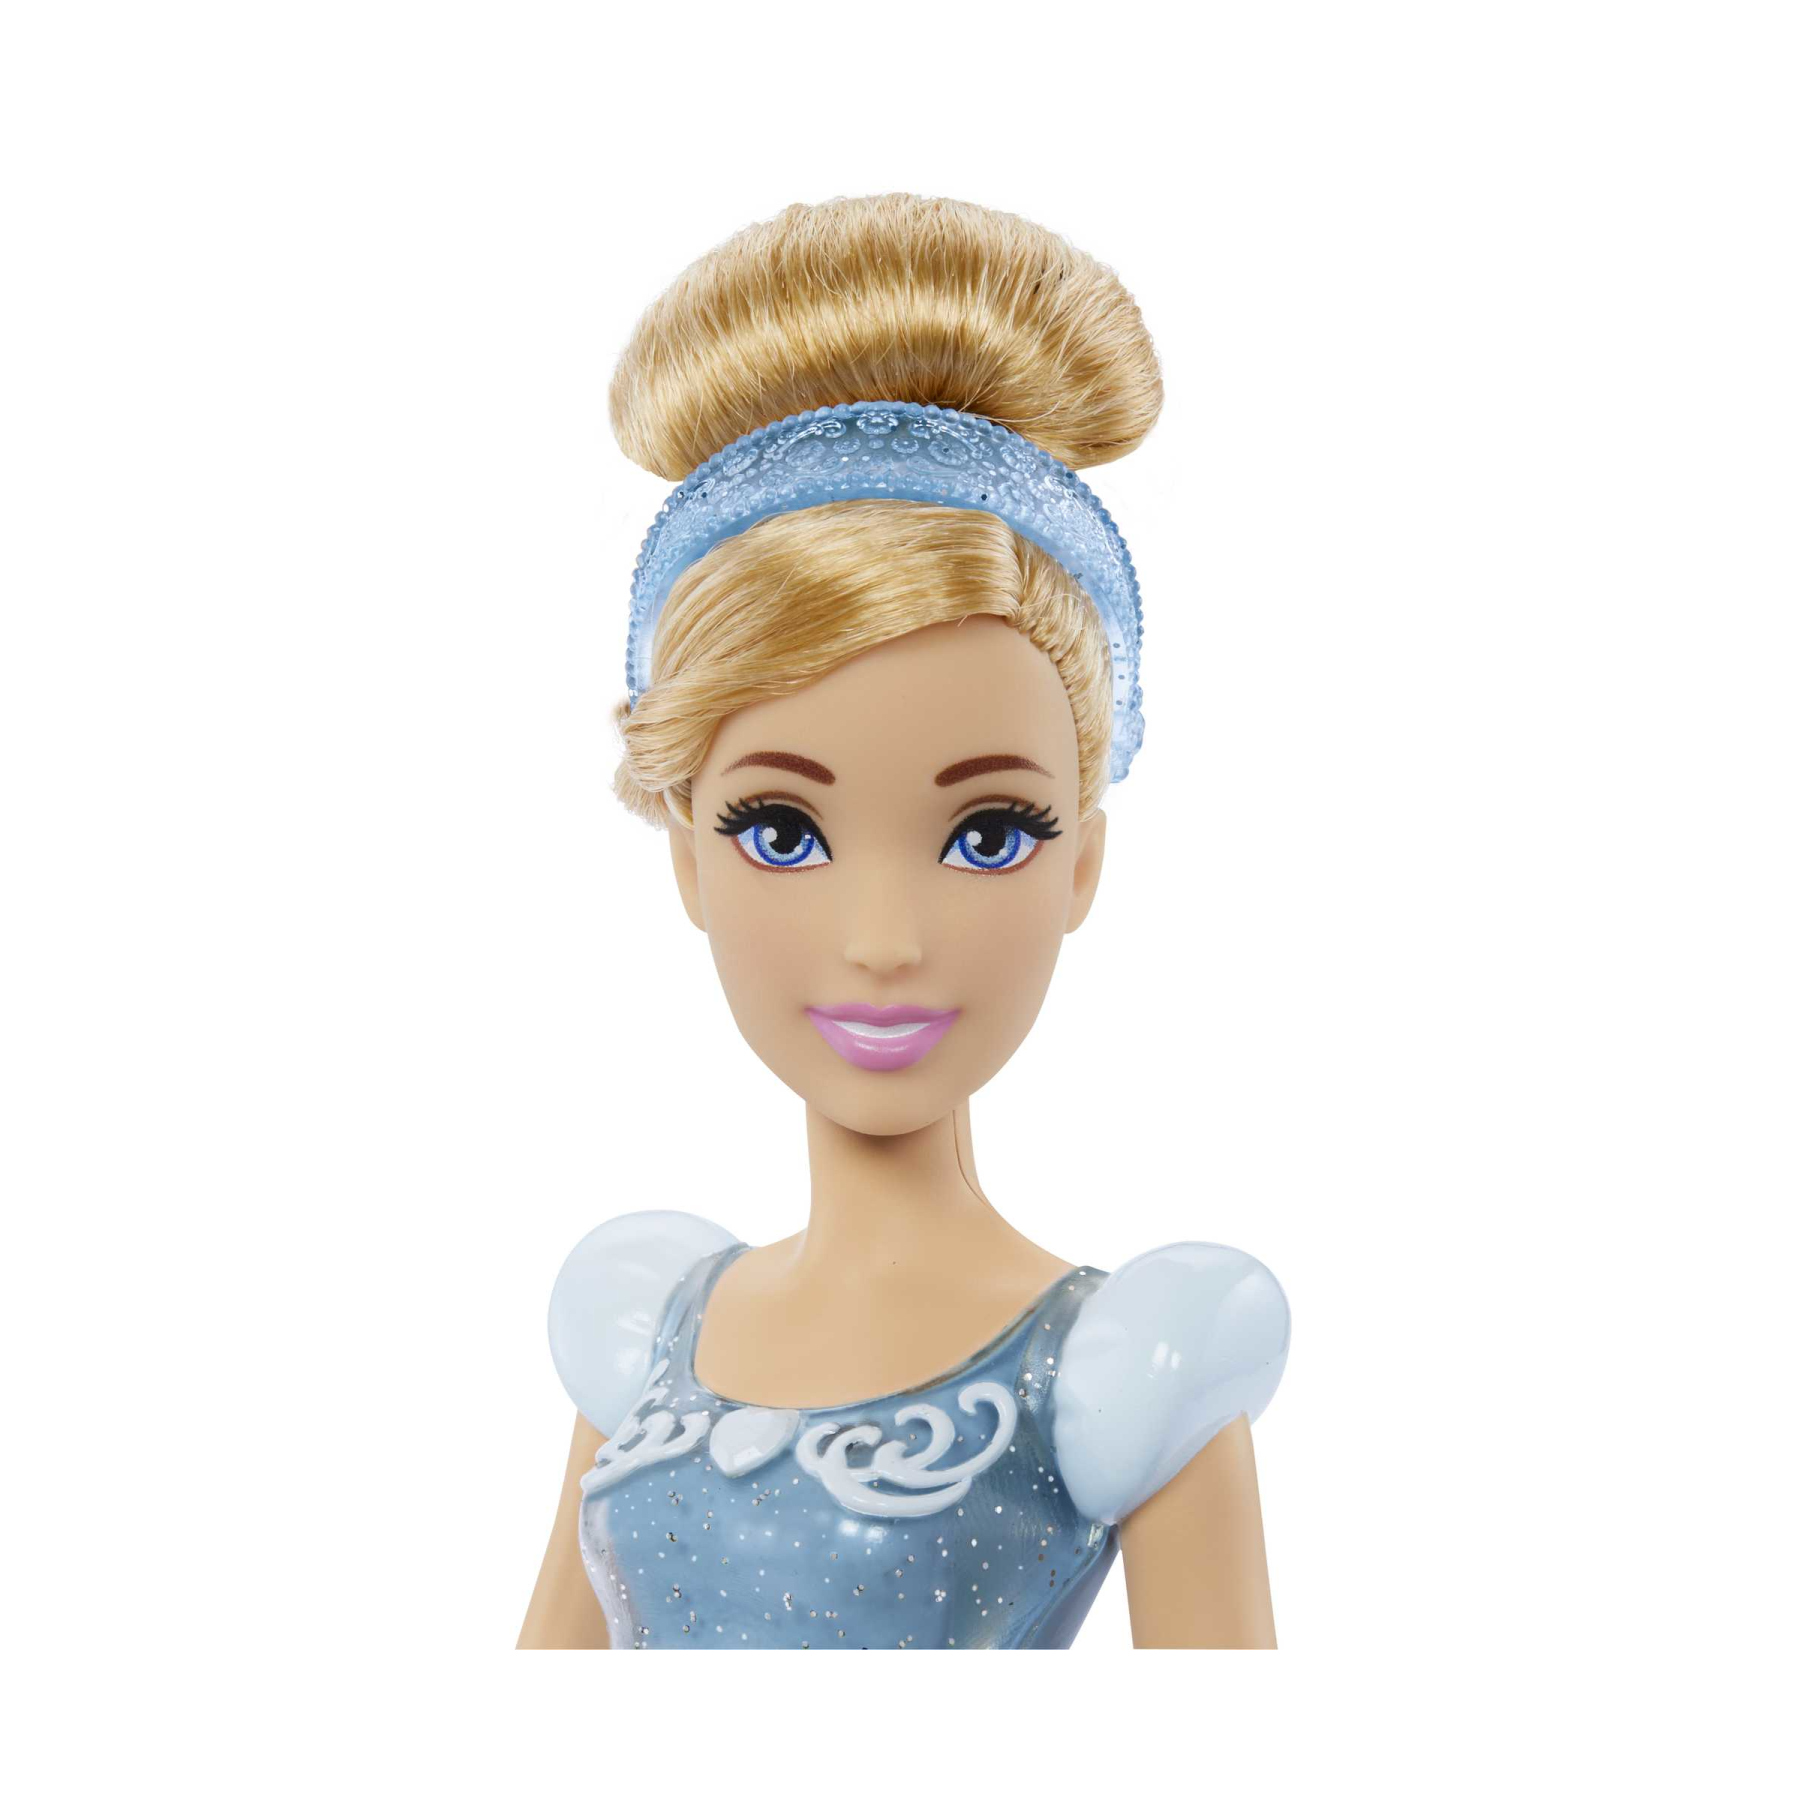 Disney princess - cenerentola bambola snodata, con capi e accessori scintillanti ispirati al film disney, giocattolo per bambini, 3+ anni, hlw06 - DISNEY PRINCESS